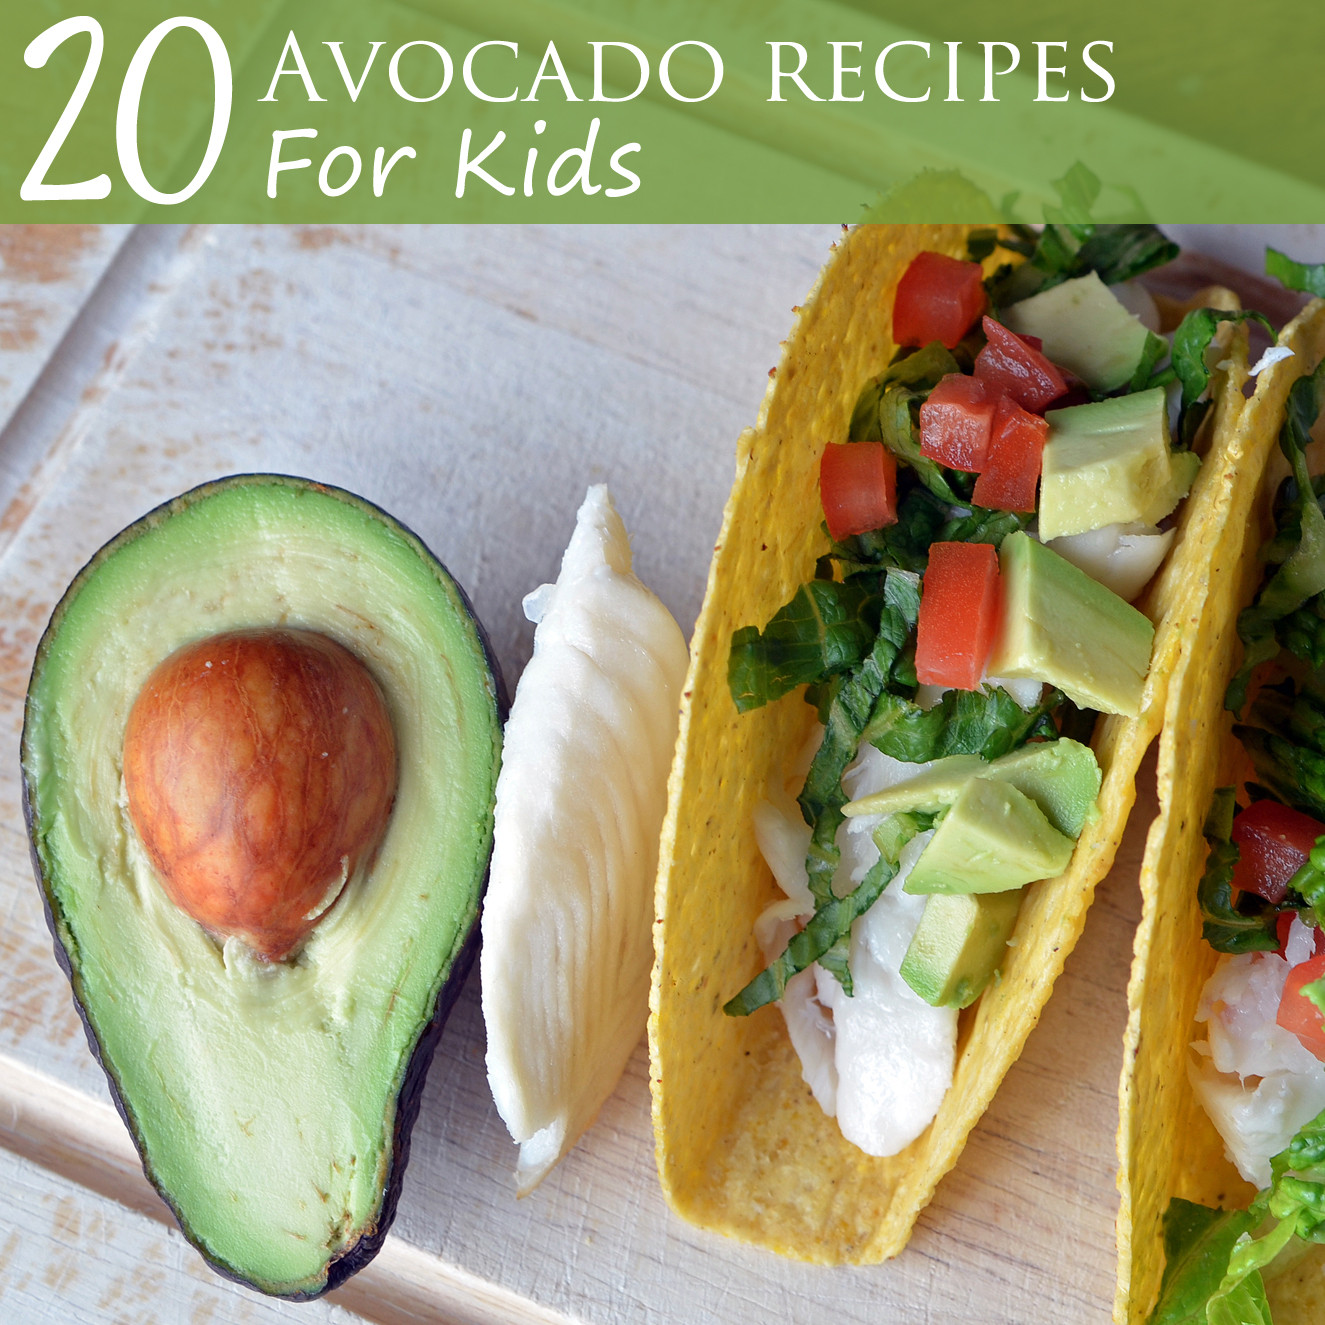 Avocado Snack Recipes
 20 Avocado Recipes for Kids